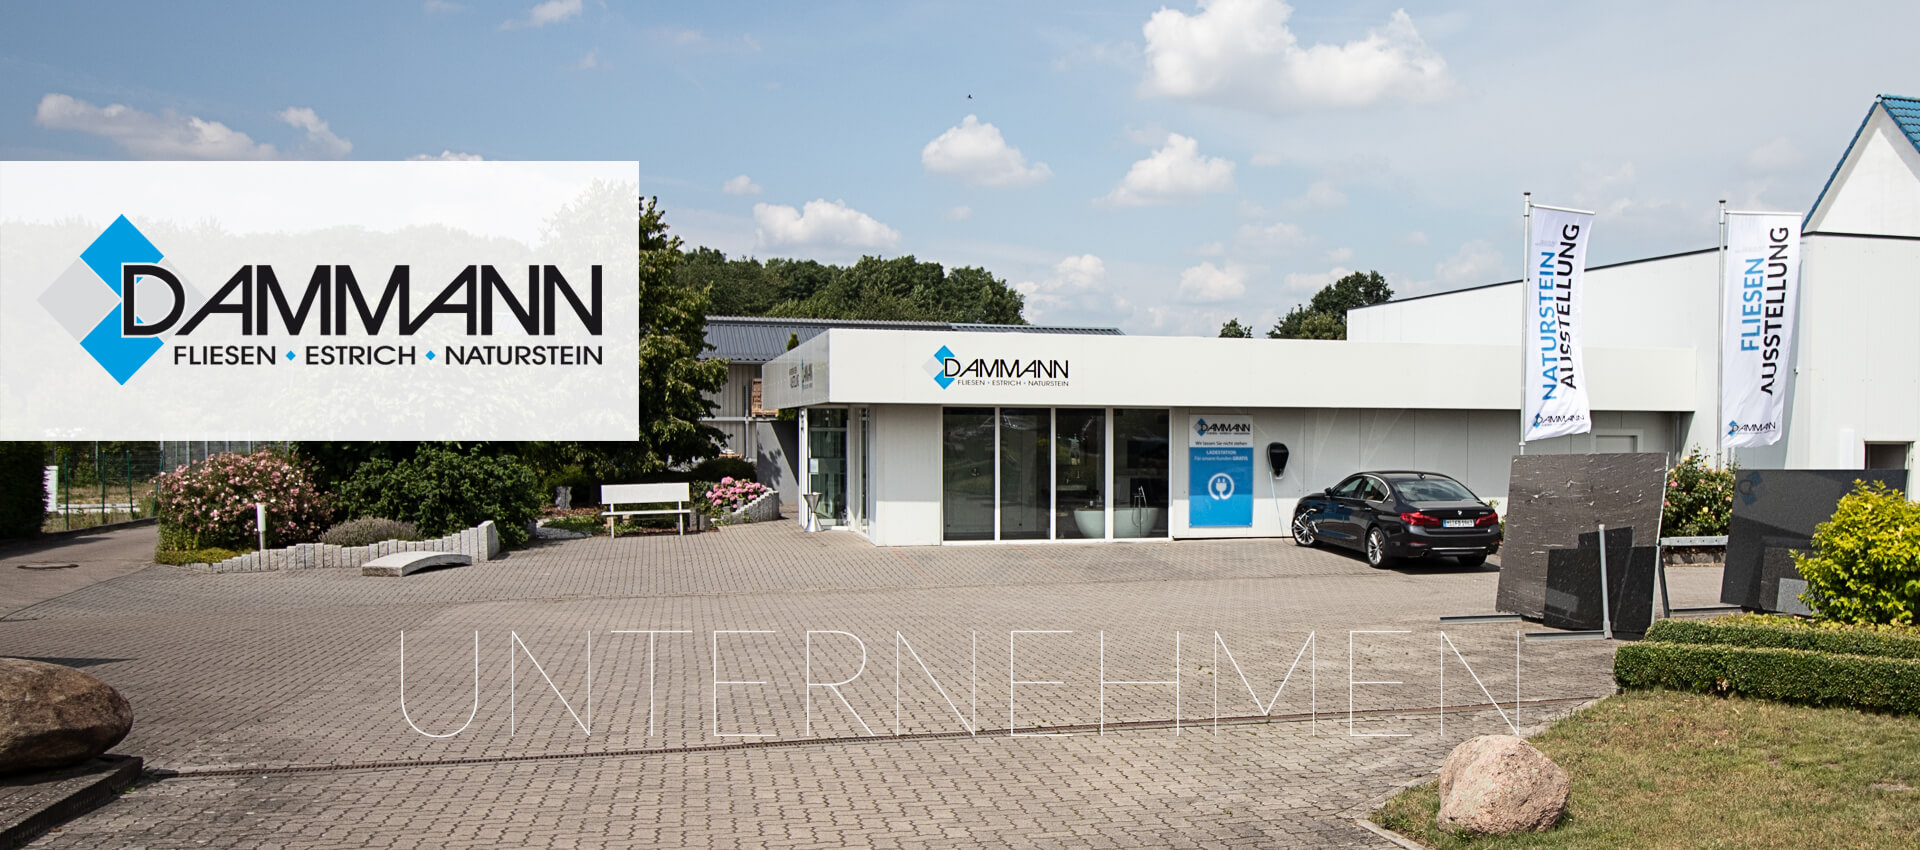 Dammann Fliesen GmbH